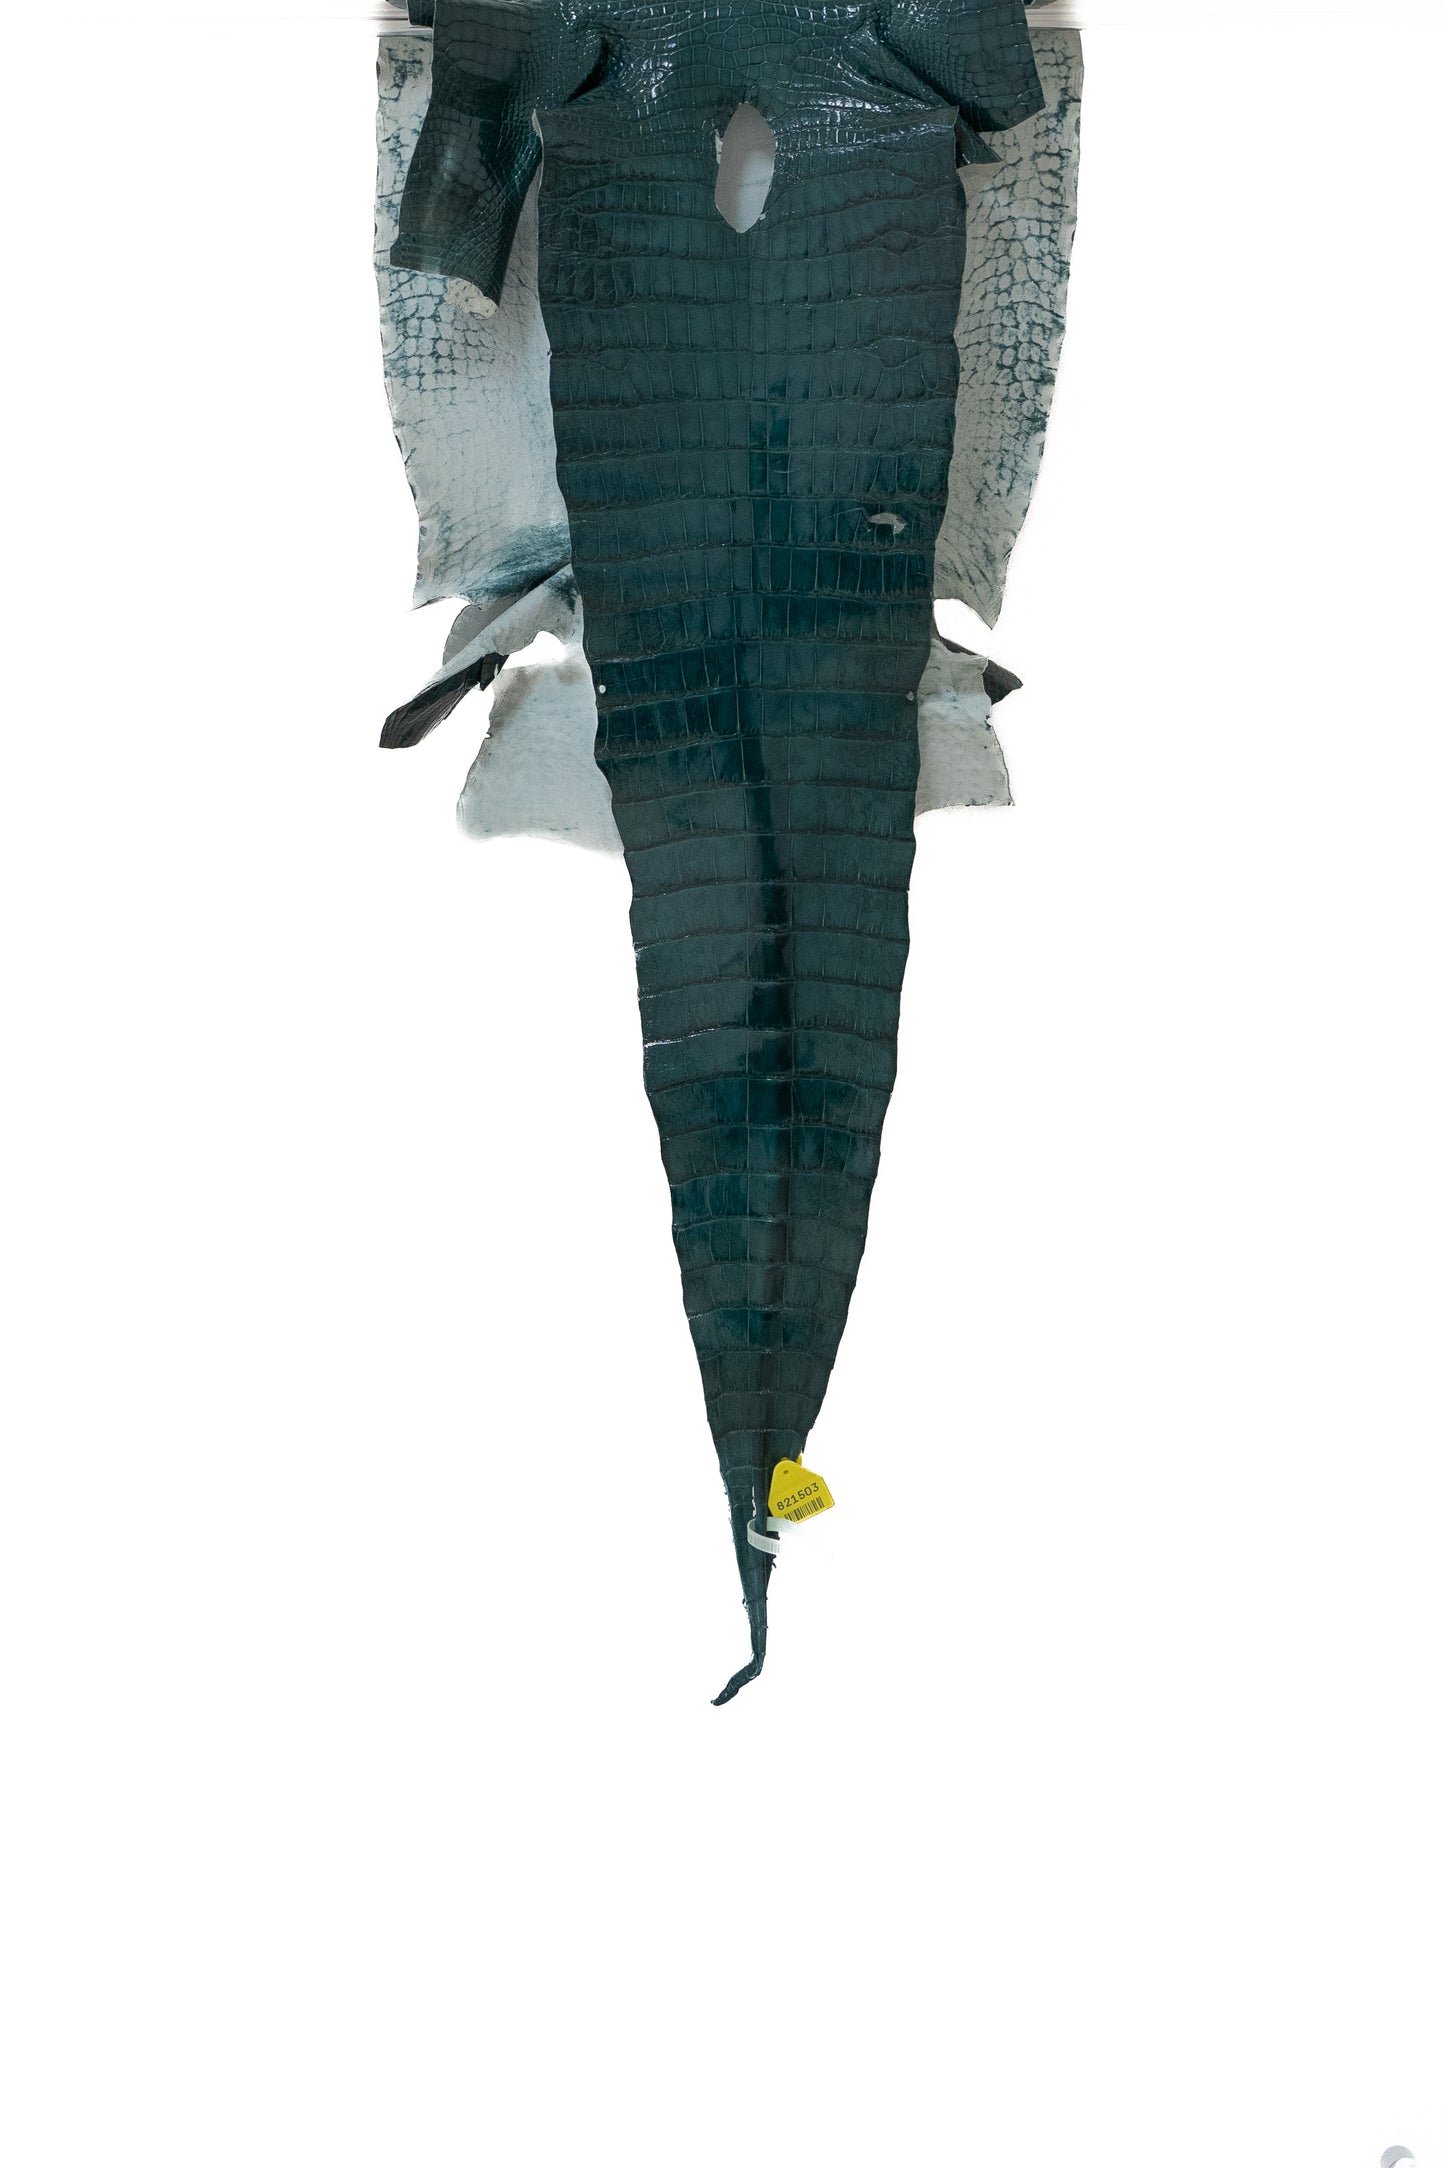 47 cm Grade 3/4 Nile Glazed Wild American Alligator Leather - Tag: LA14-0029376